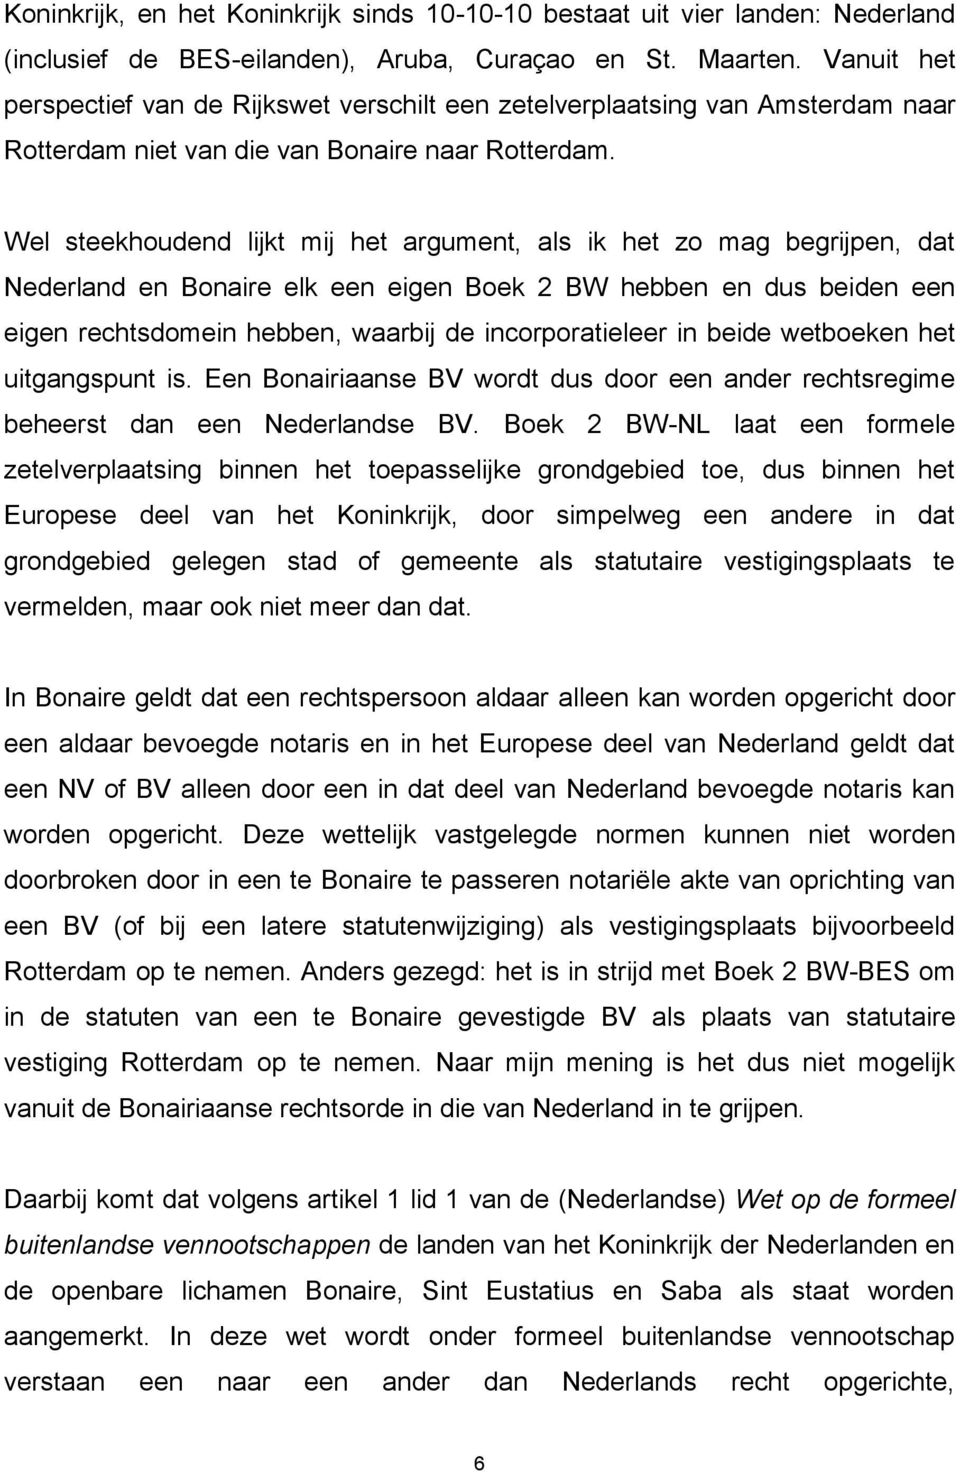 Wel steekhoudend lijkt mij het argument, als ik het zo mag begrijpen, dat Nederland en Bonaire elk een eigen Boek 2 BW hebben en dus beiden een eigen rechtsdomein hebben, waarbij de incorporatieleer